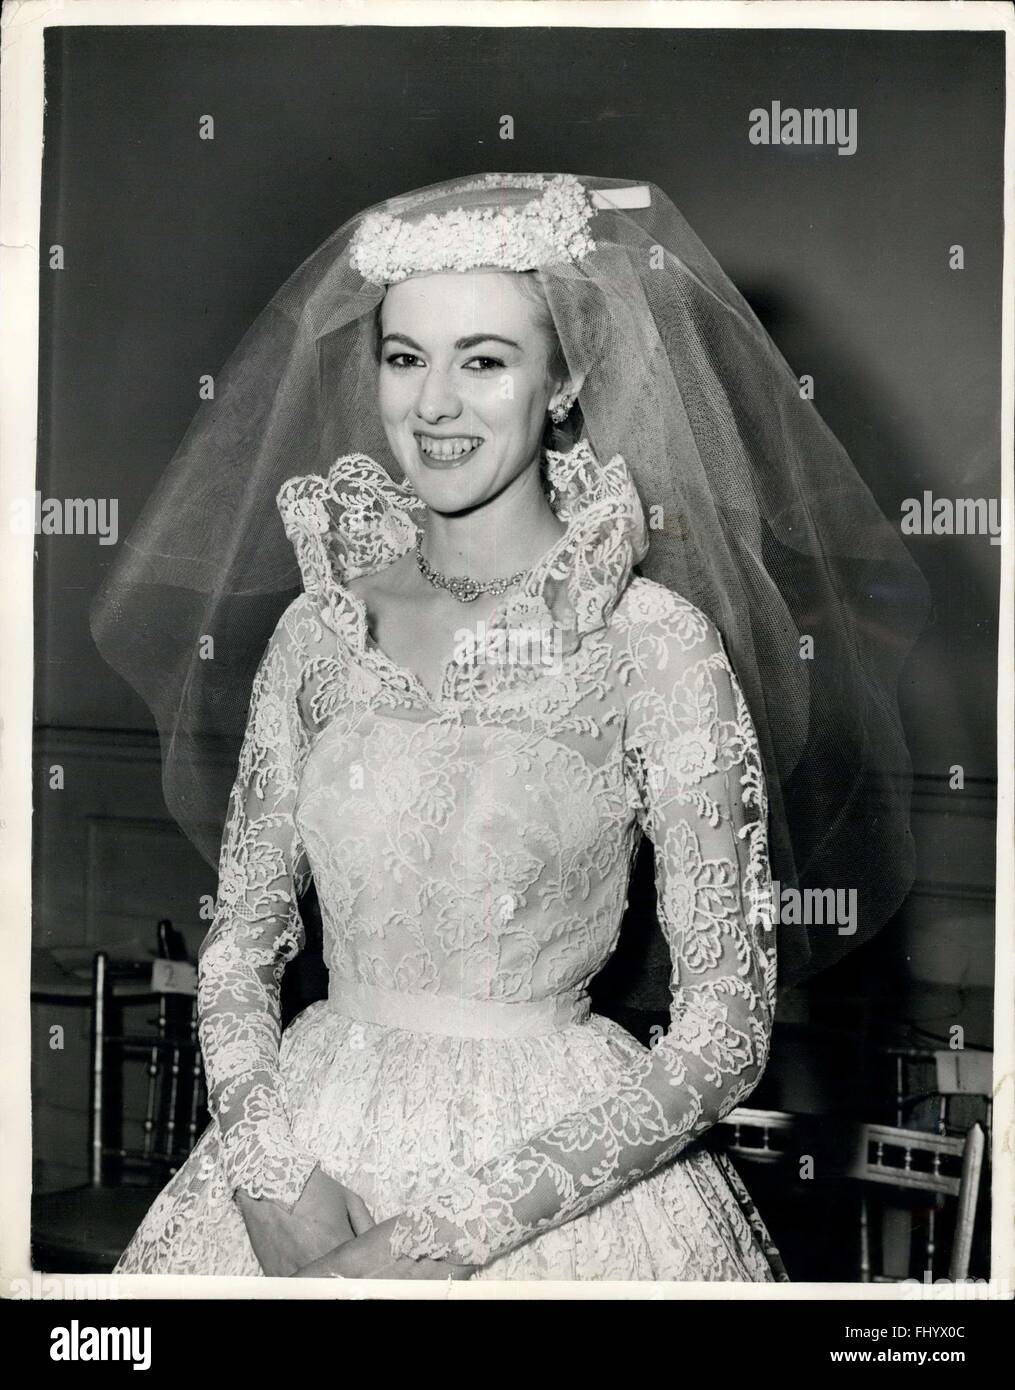 1956: sie zeigen ihr eigenes Brautkleid Mode Anzeige. Verschiebt Ehen für  Show: London Modell - zwanzig Jahre alten Sheila Morgan hat Hochzeit Ende  Januar Geschäftsmann Paul Symonds auf ein Datum im März